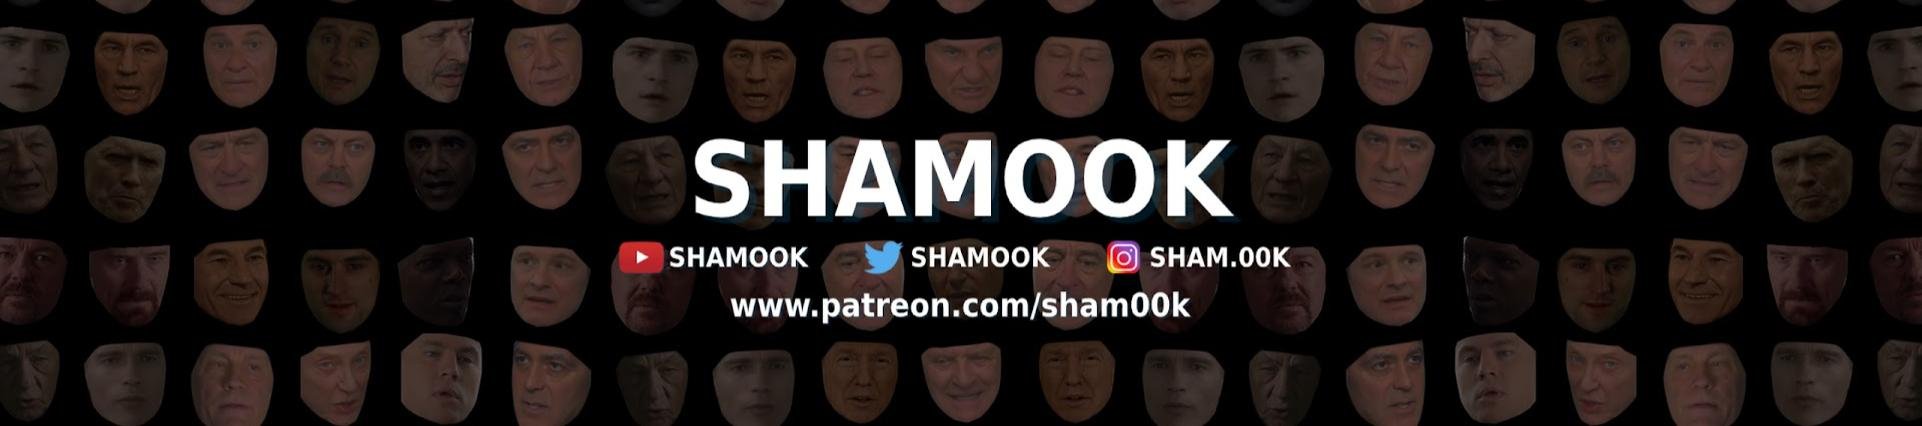 Shamook